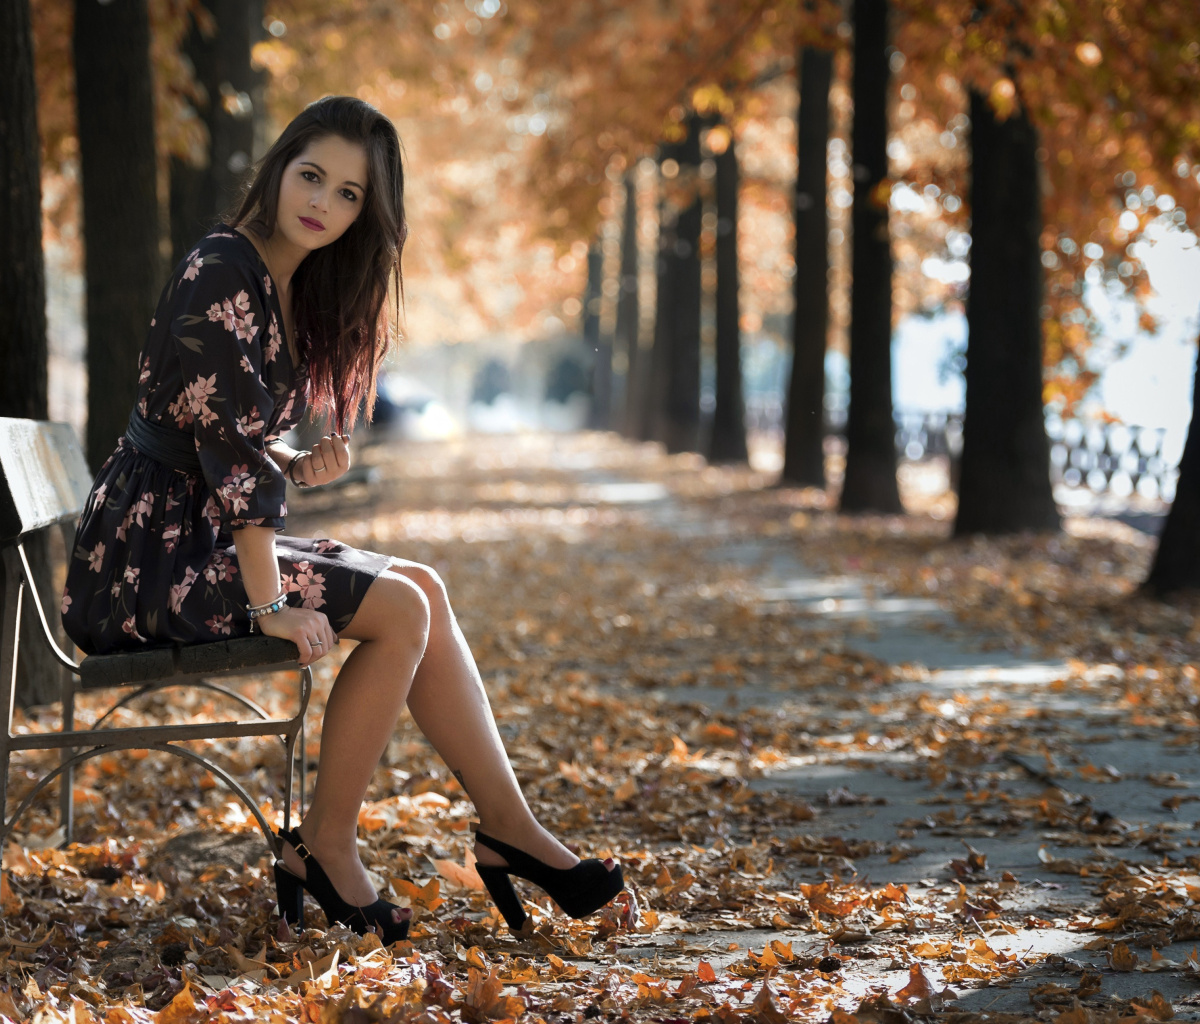 Caucasian joy girl in autumn park screenshot #1 1200x1024